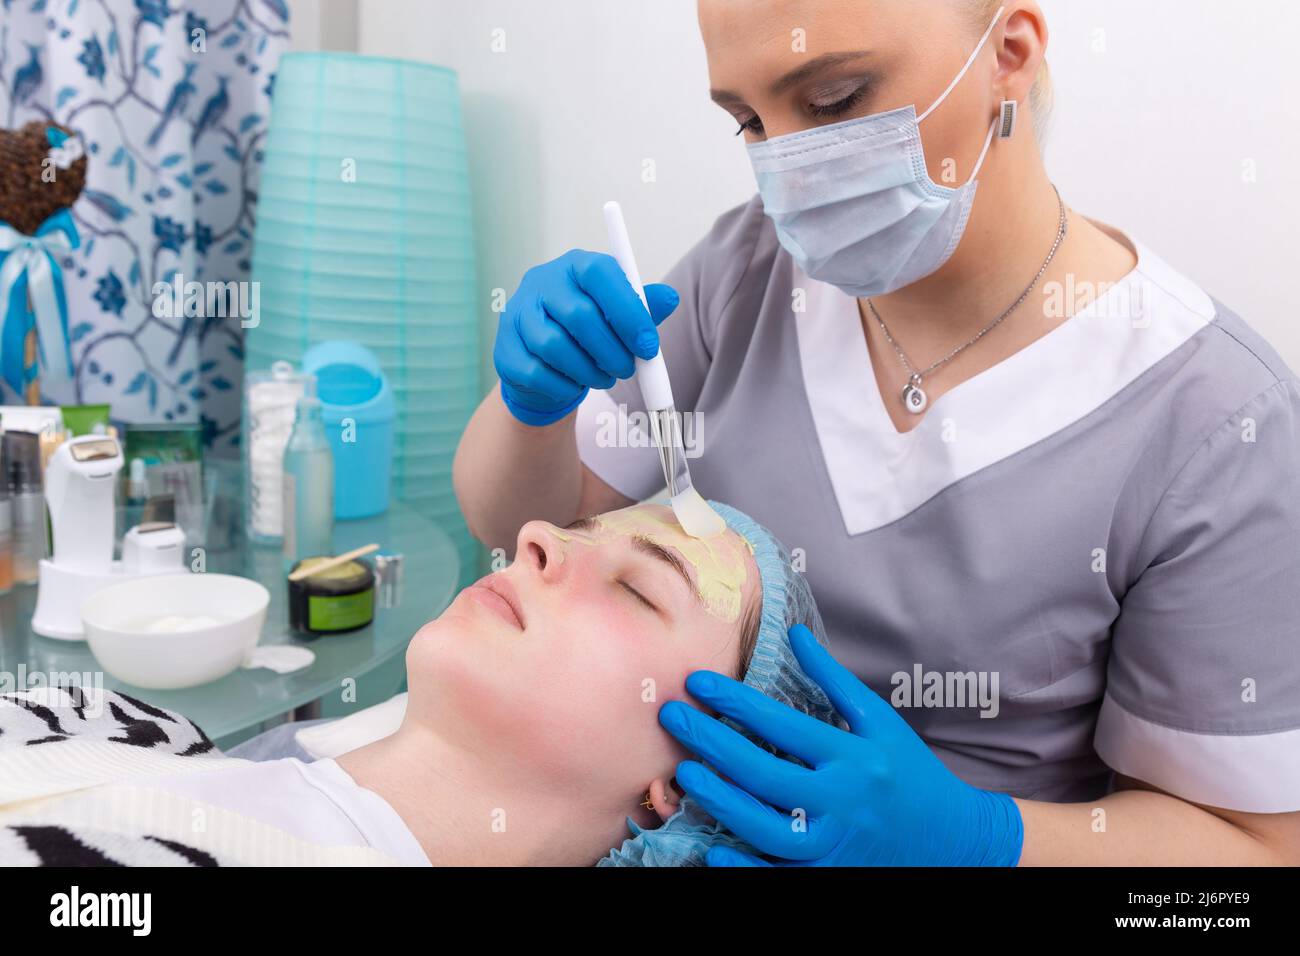 Le cosmétologue applique un masque d'alginate avec une spatule sur le visage de la femme. Soin du visage et traitement anti-âge. Cosmétologie et soin professionnel de la peau du visage Banque D'Images